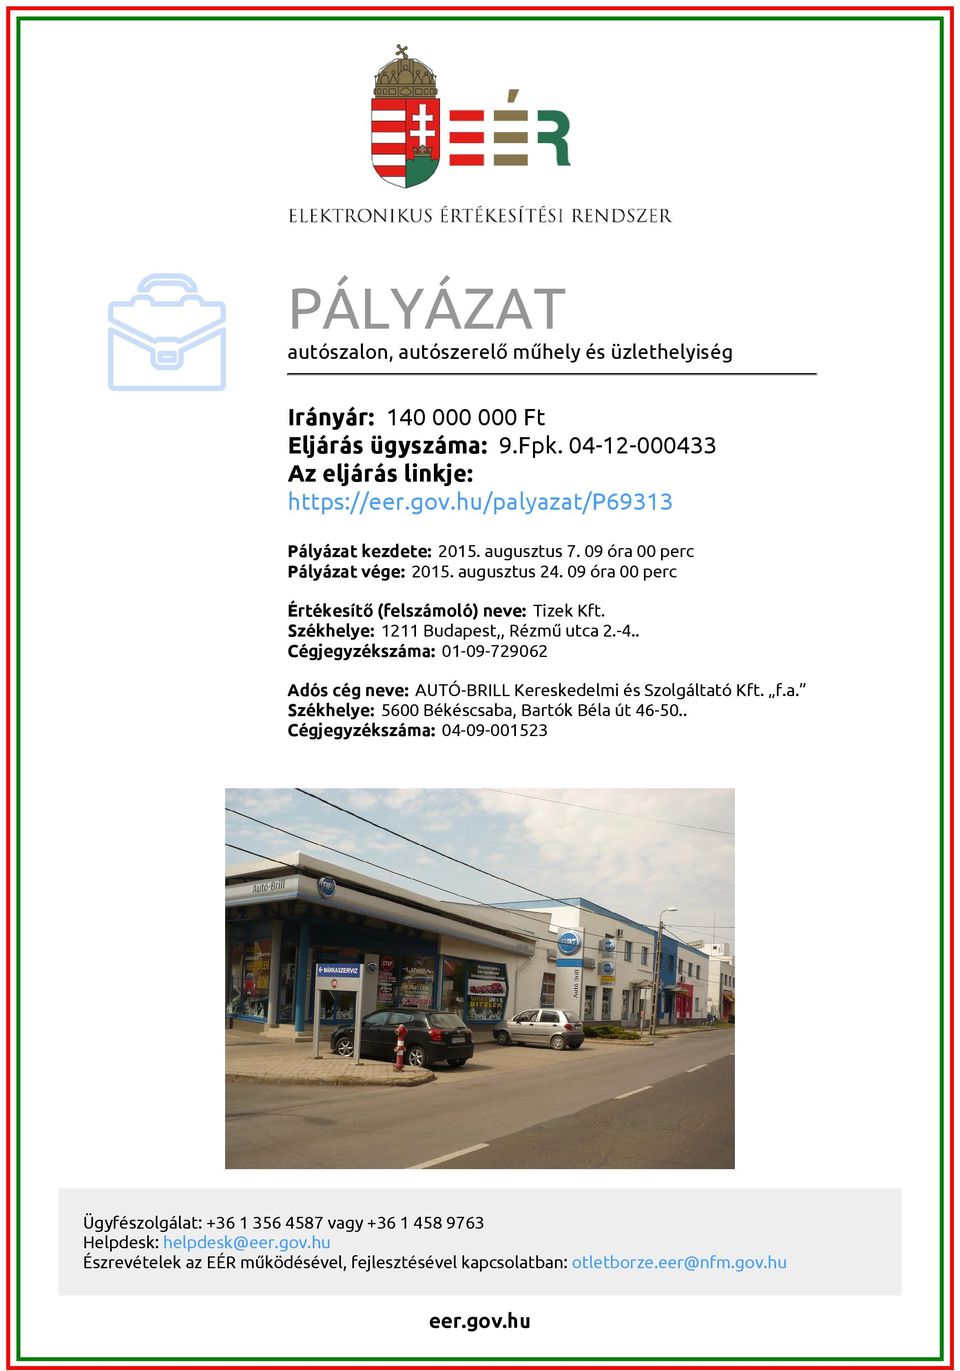 PÁLYÁZAT. autószalon, autószerelő műhely és üzlethelyiség - PDF Free  Download